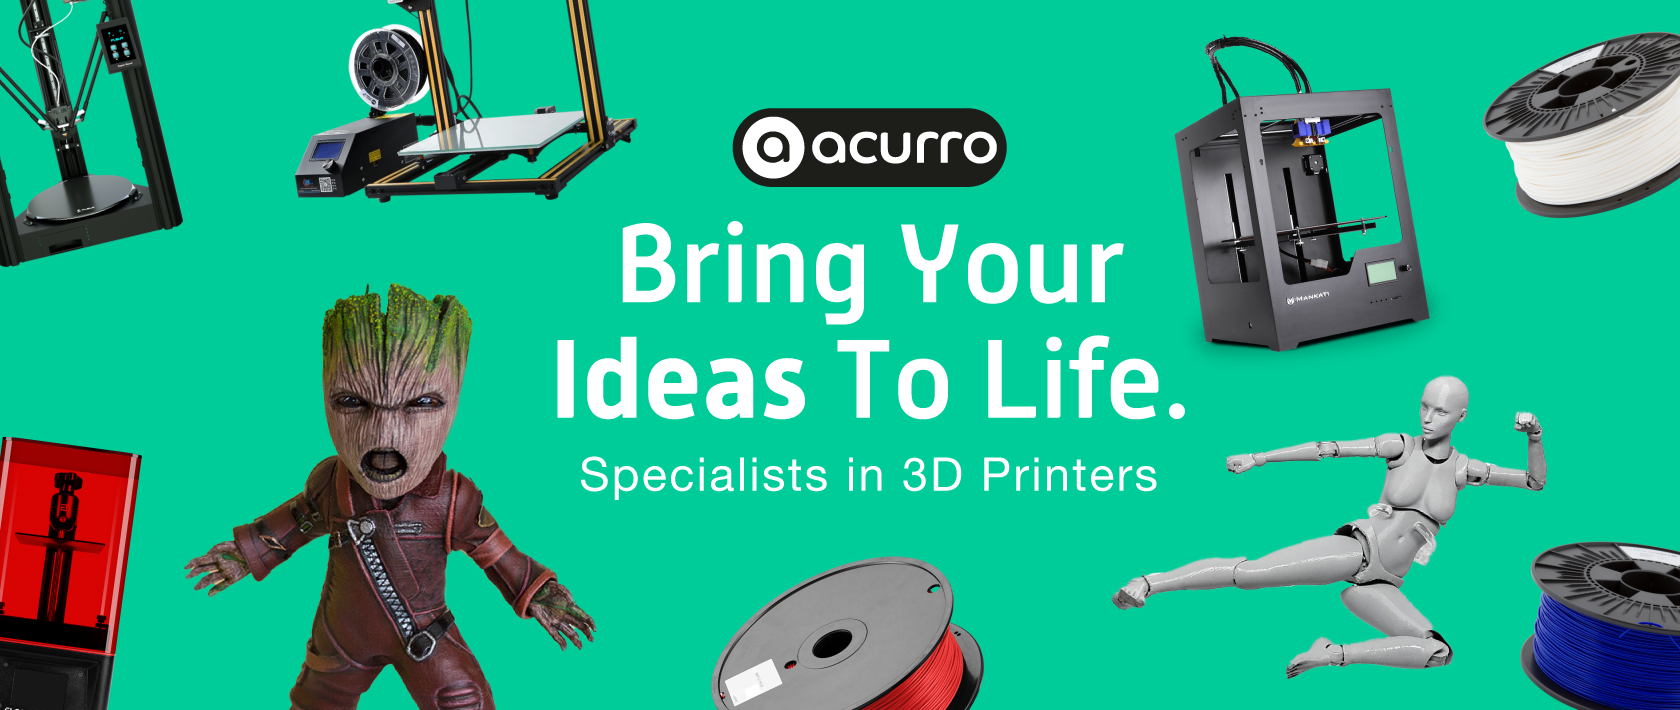 specialists in 3d printers desktop banner